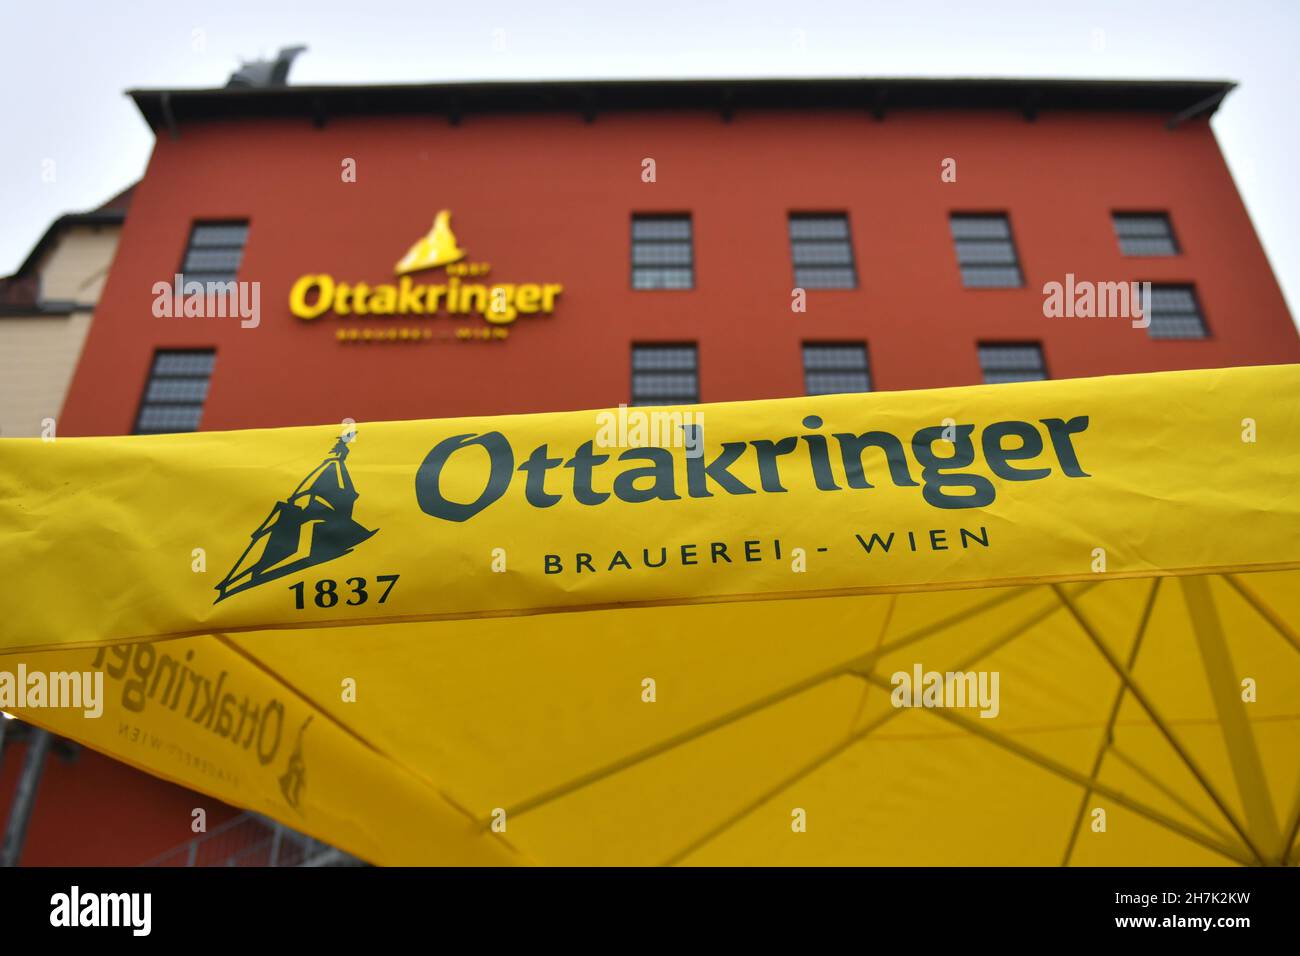 Brauerei Ottakring in Wien, Österreich, Europa - Brewery Ottakring in Vienna, Austria, Europe Stock Photo